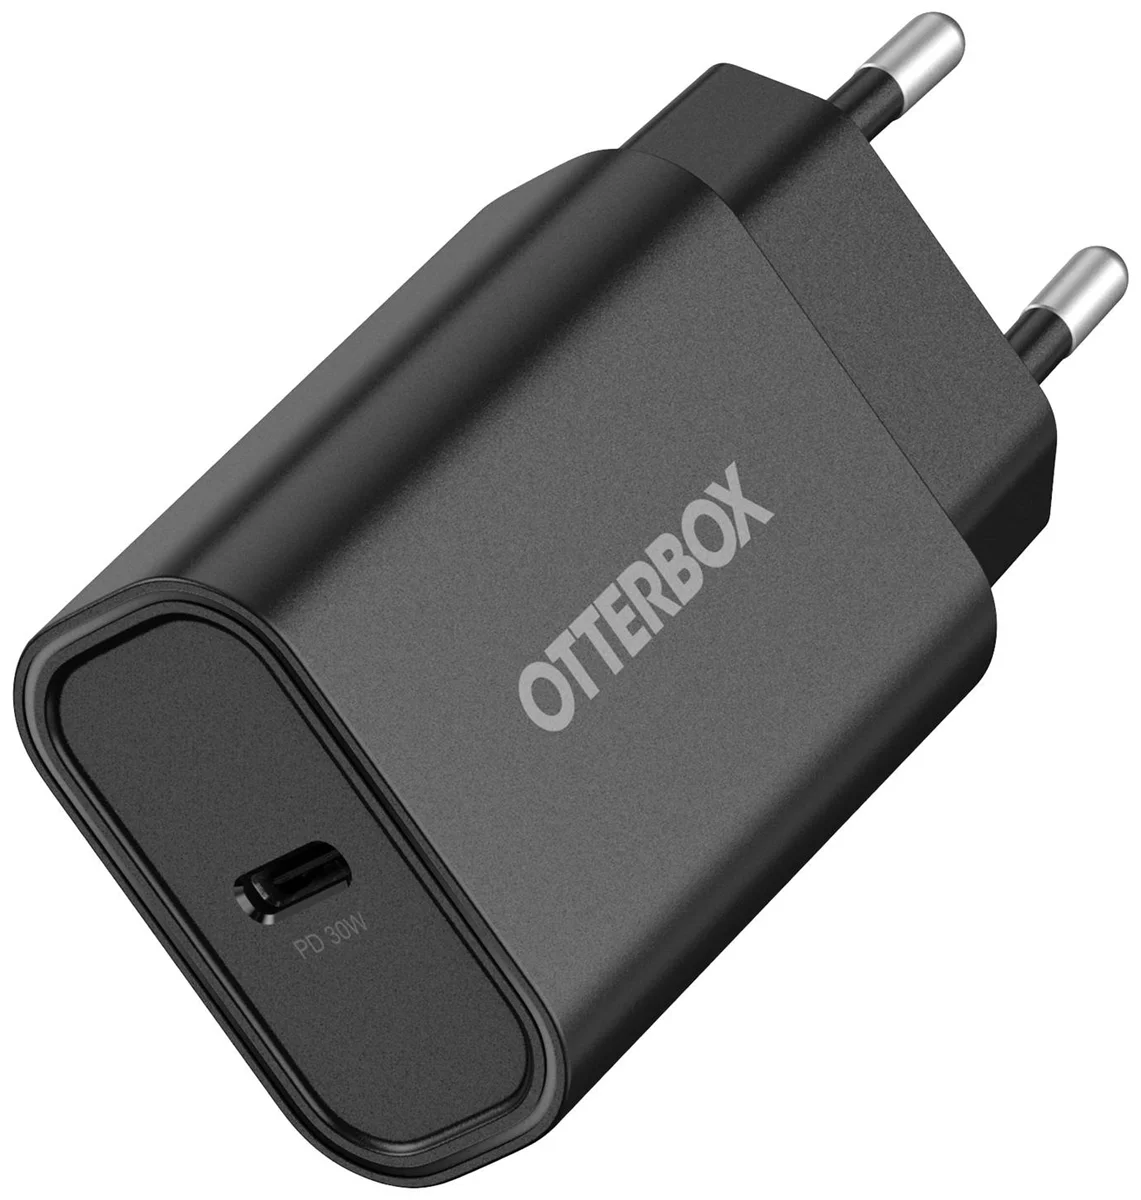 Nabíječka OTTERBOX STANDARD EU WALL CHARGER 30W/- 1X USB-C 30W USB-PD BLACK (78-81339)